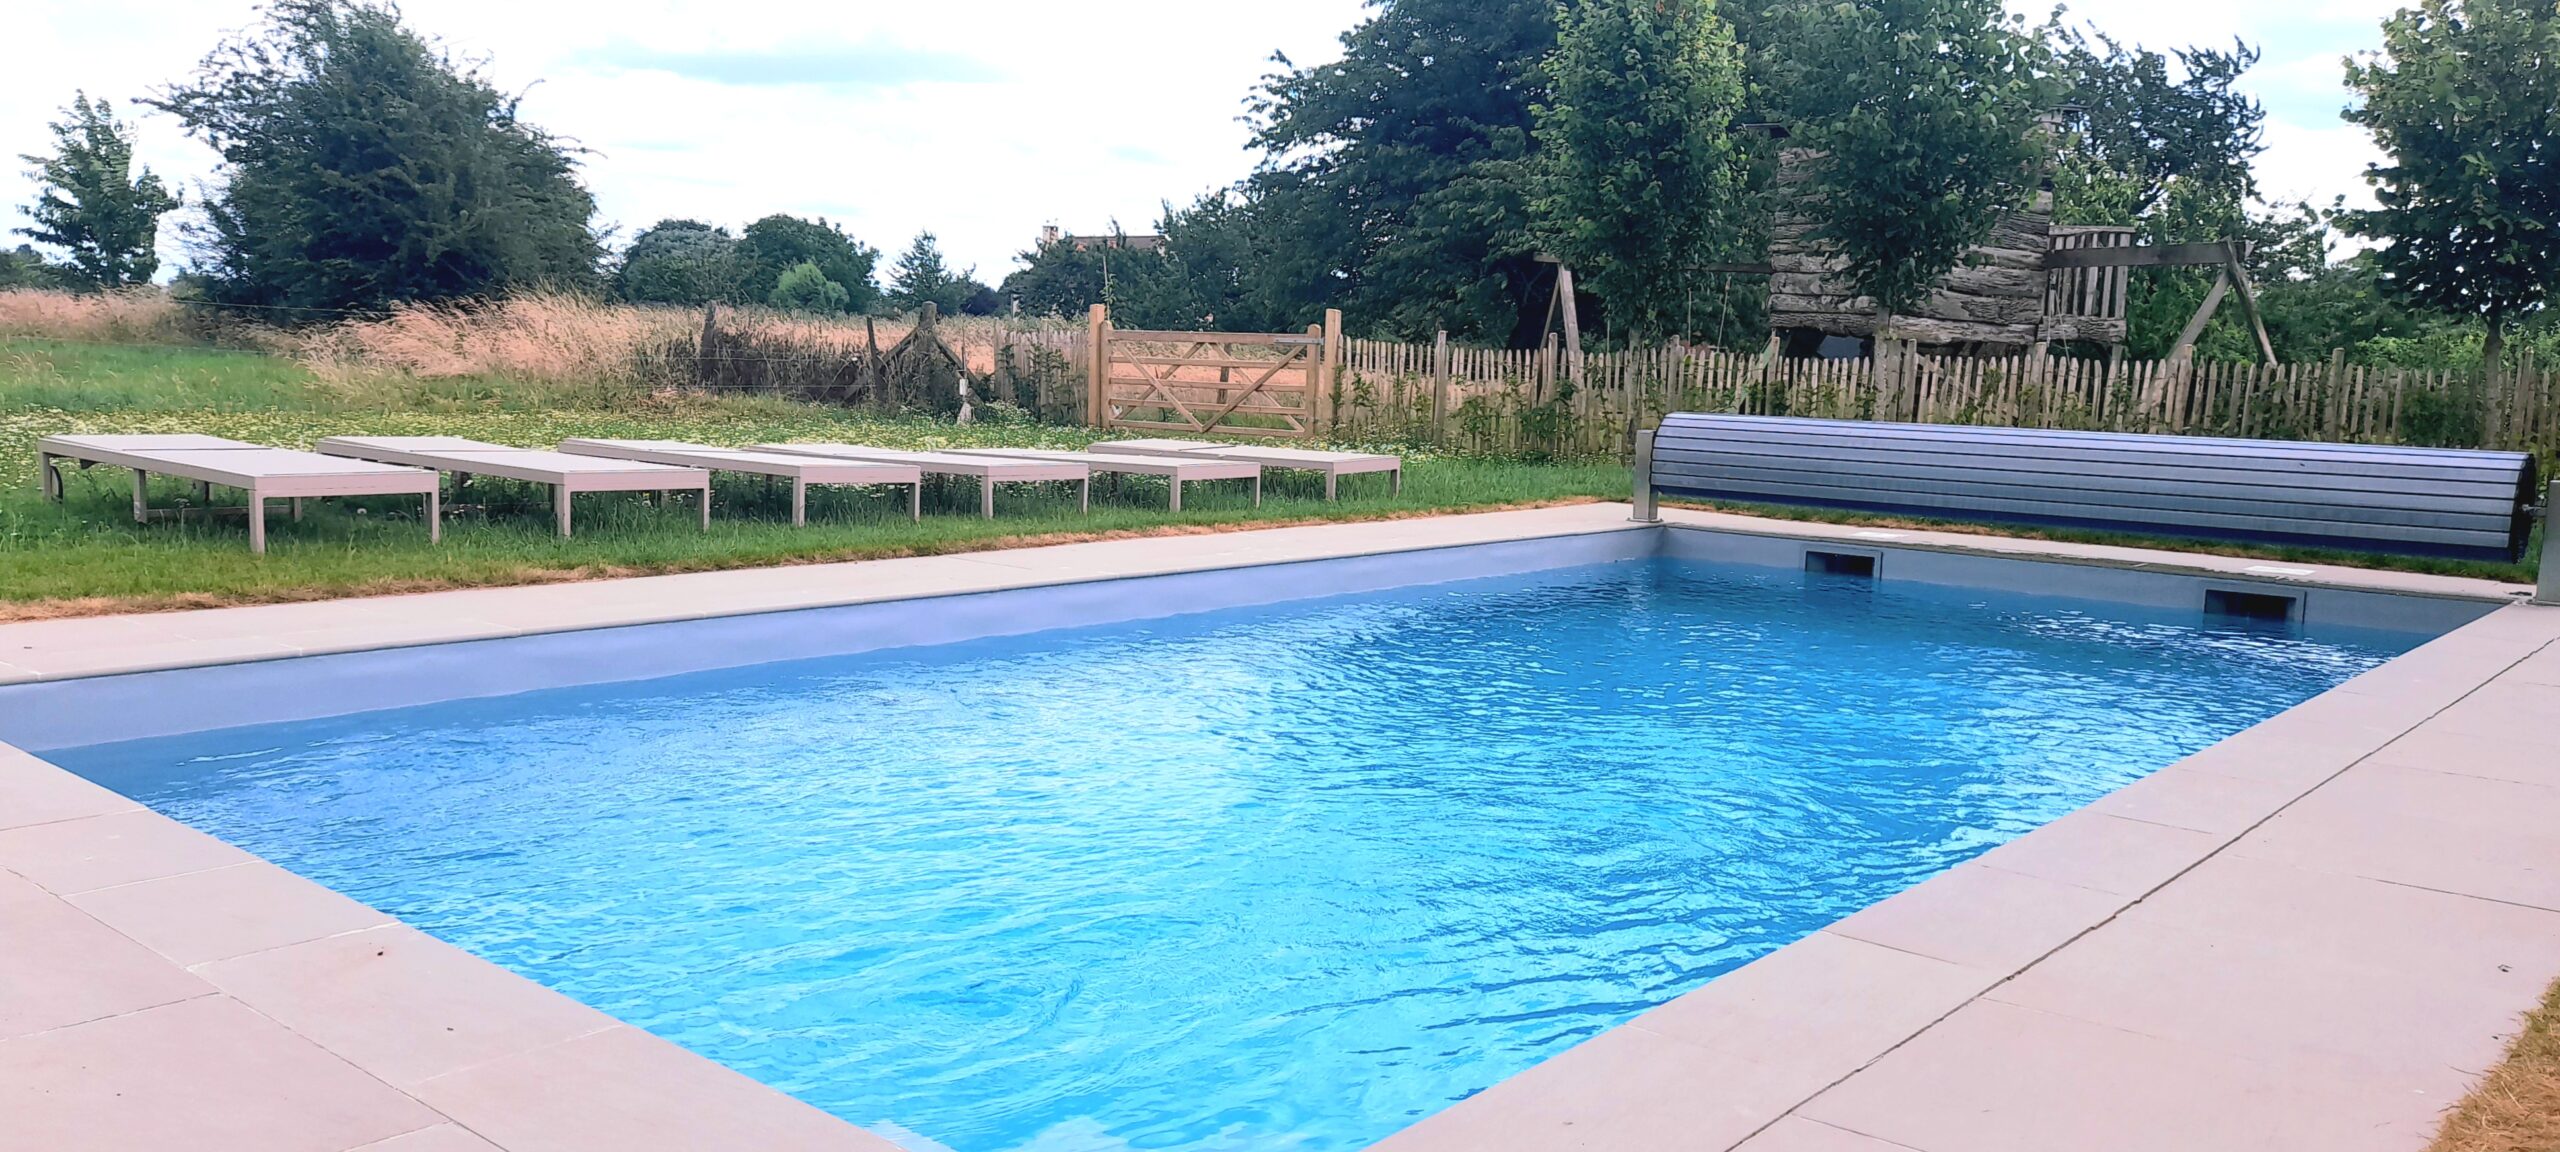 Gites et maisons de vacances à louer à Jemeppe-sur-Sambre La piscine de la Cense de Baudecet 